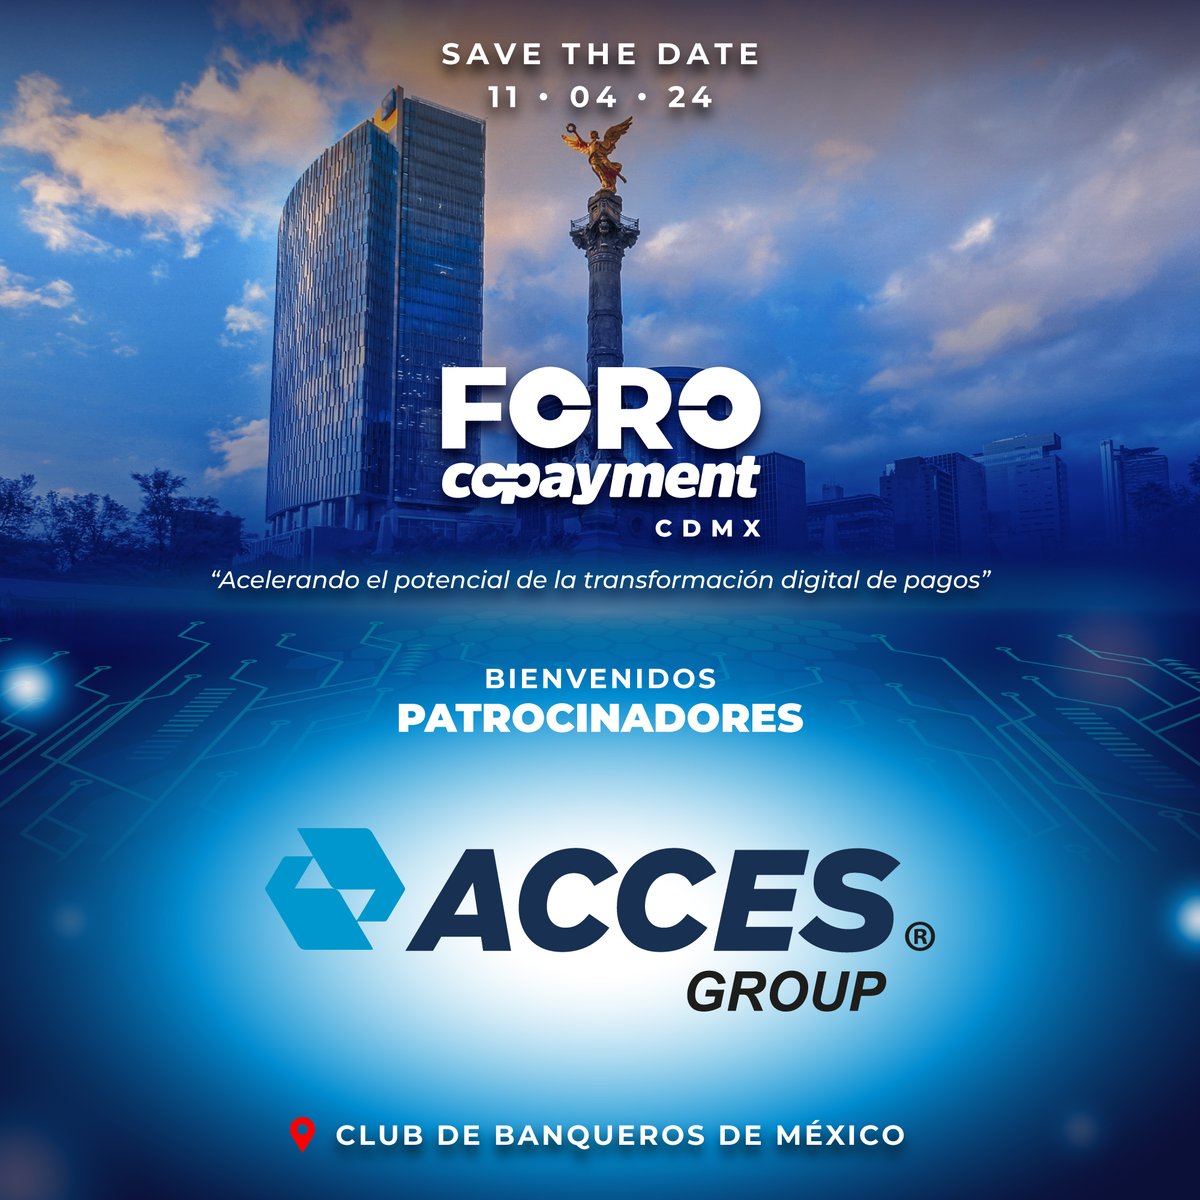 ¡Le damos la bienvenida a Acces Group como patrocinador del FORO COPAYMENT CDMX! 📆 11 de Abril, 2024 📍 Club de Banqueros de México ➡️ Regístrate: foro.copayment.com.mx/#/signup #forocopaymentcdmx